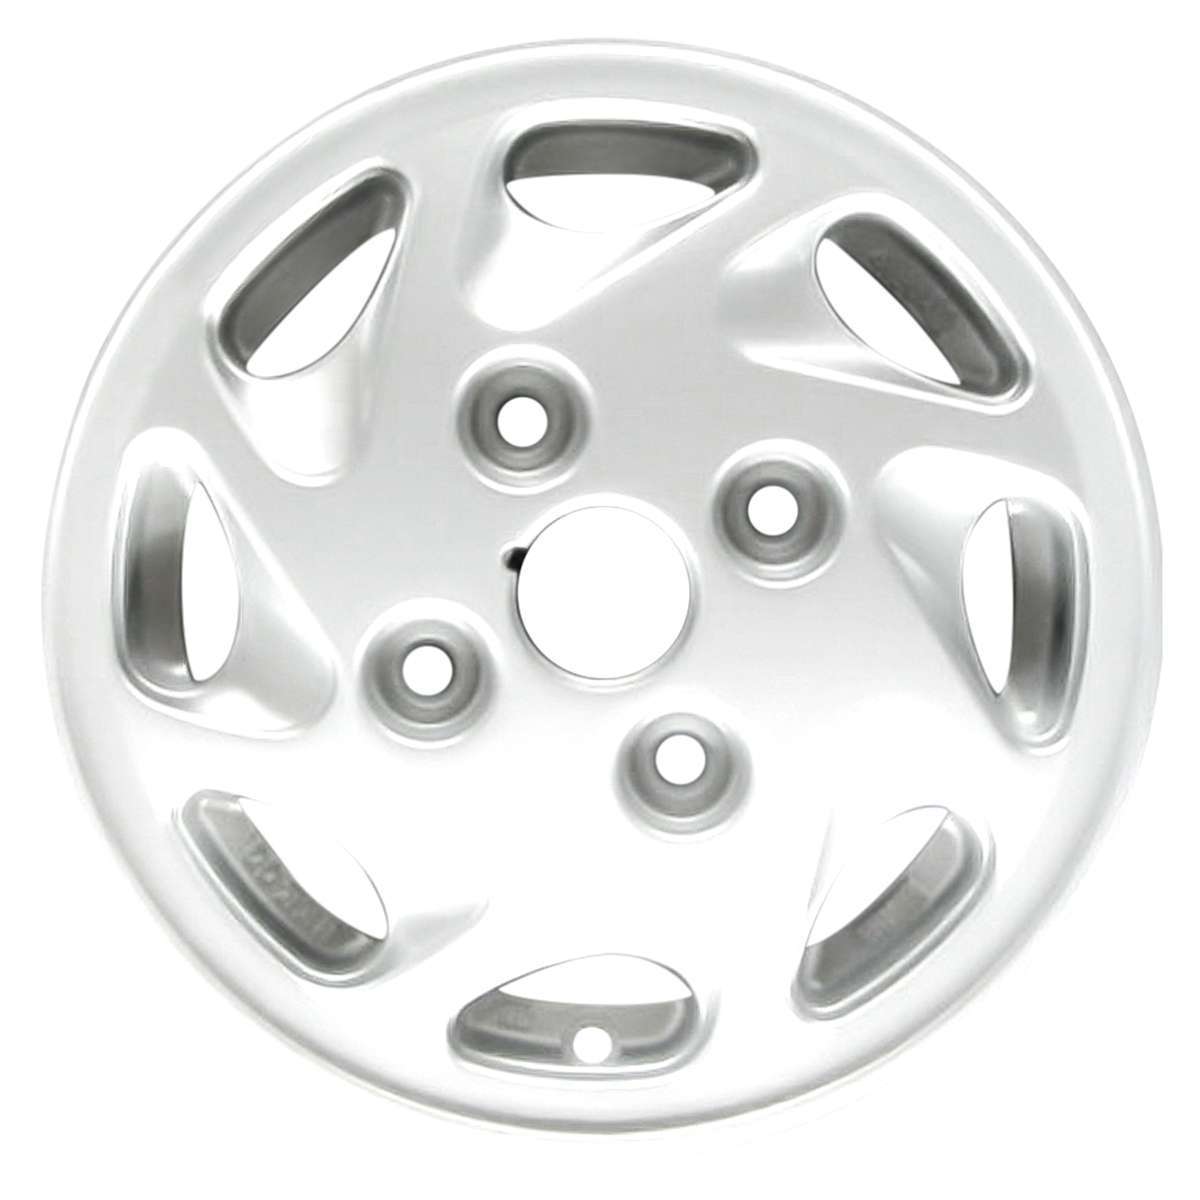 1993 Ford Festiva 12" OEM Wheel Rim W1578W